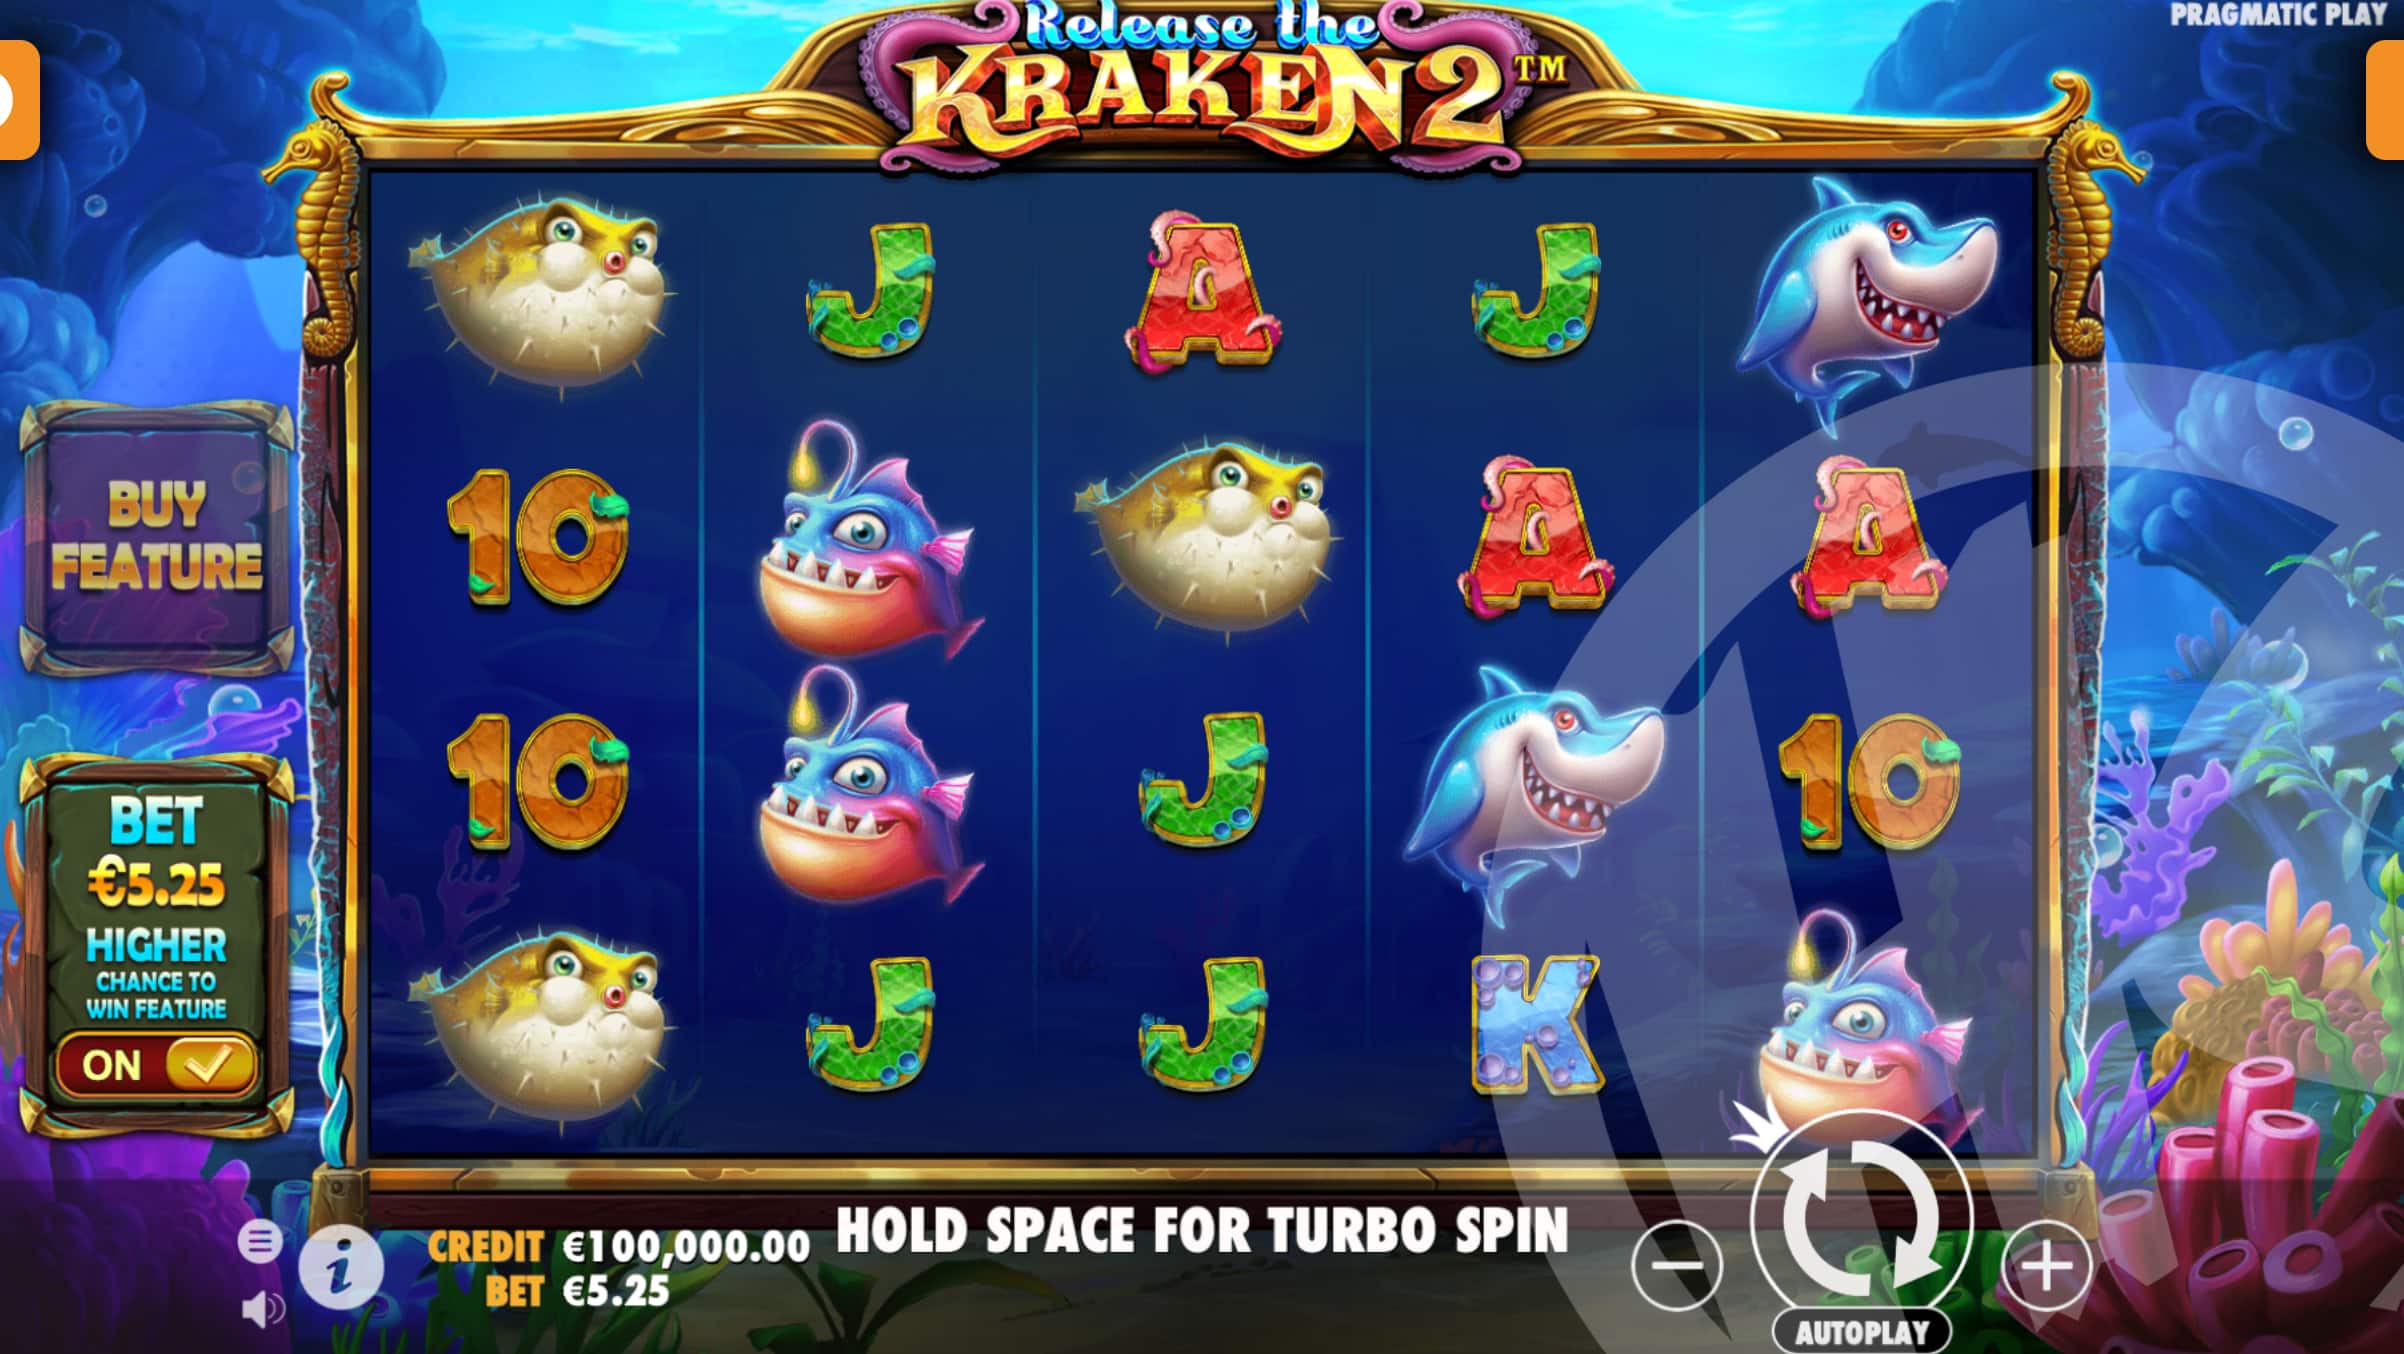 Release the Kraken 2 Base Game